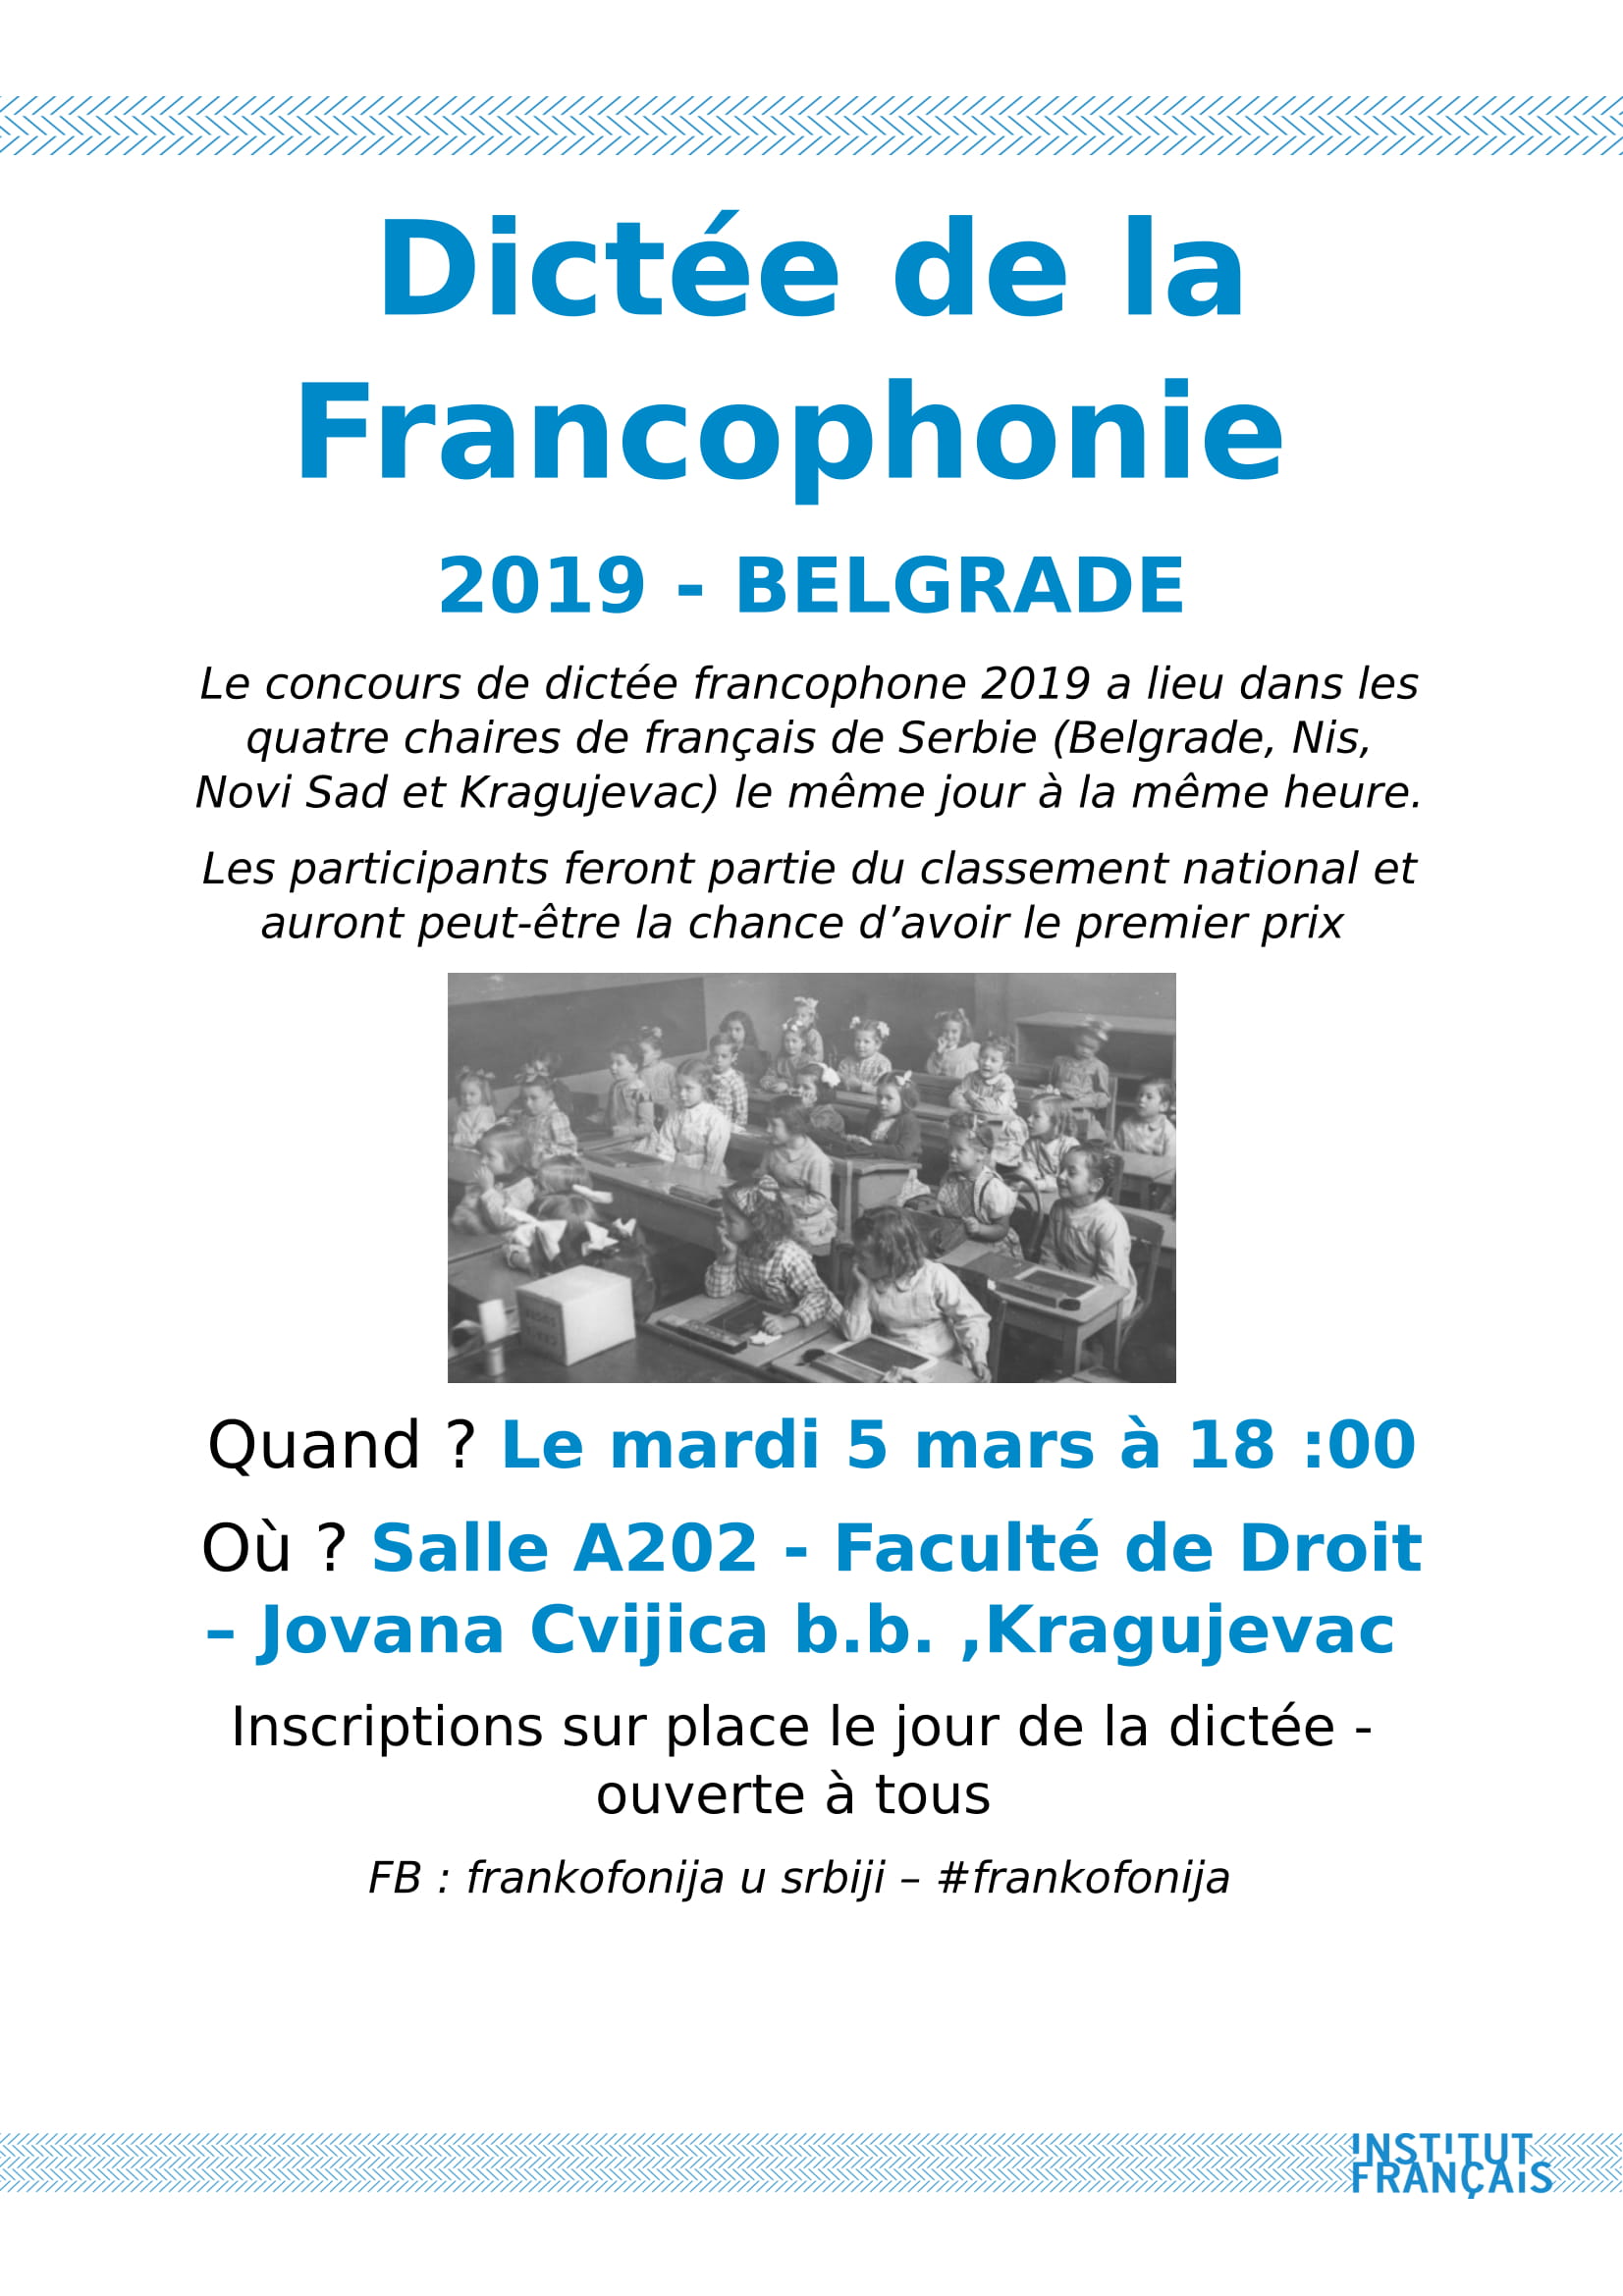 Affiche Dictée de la Francophonie 2019